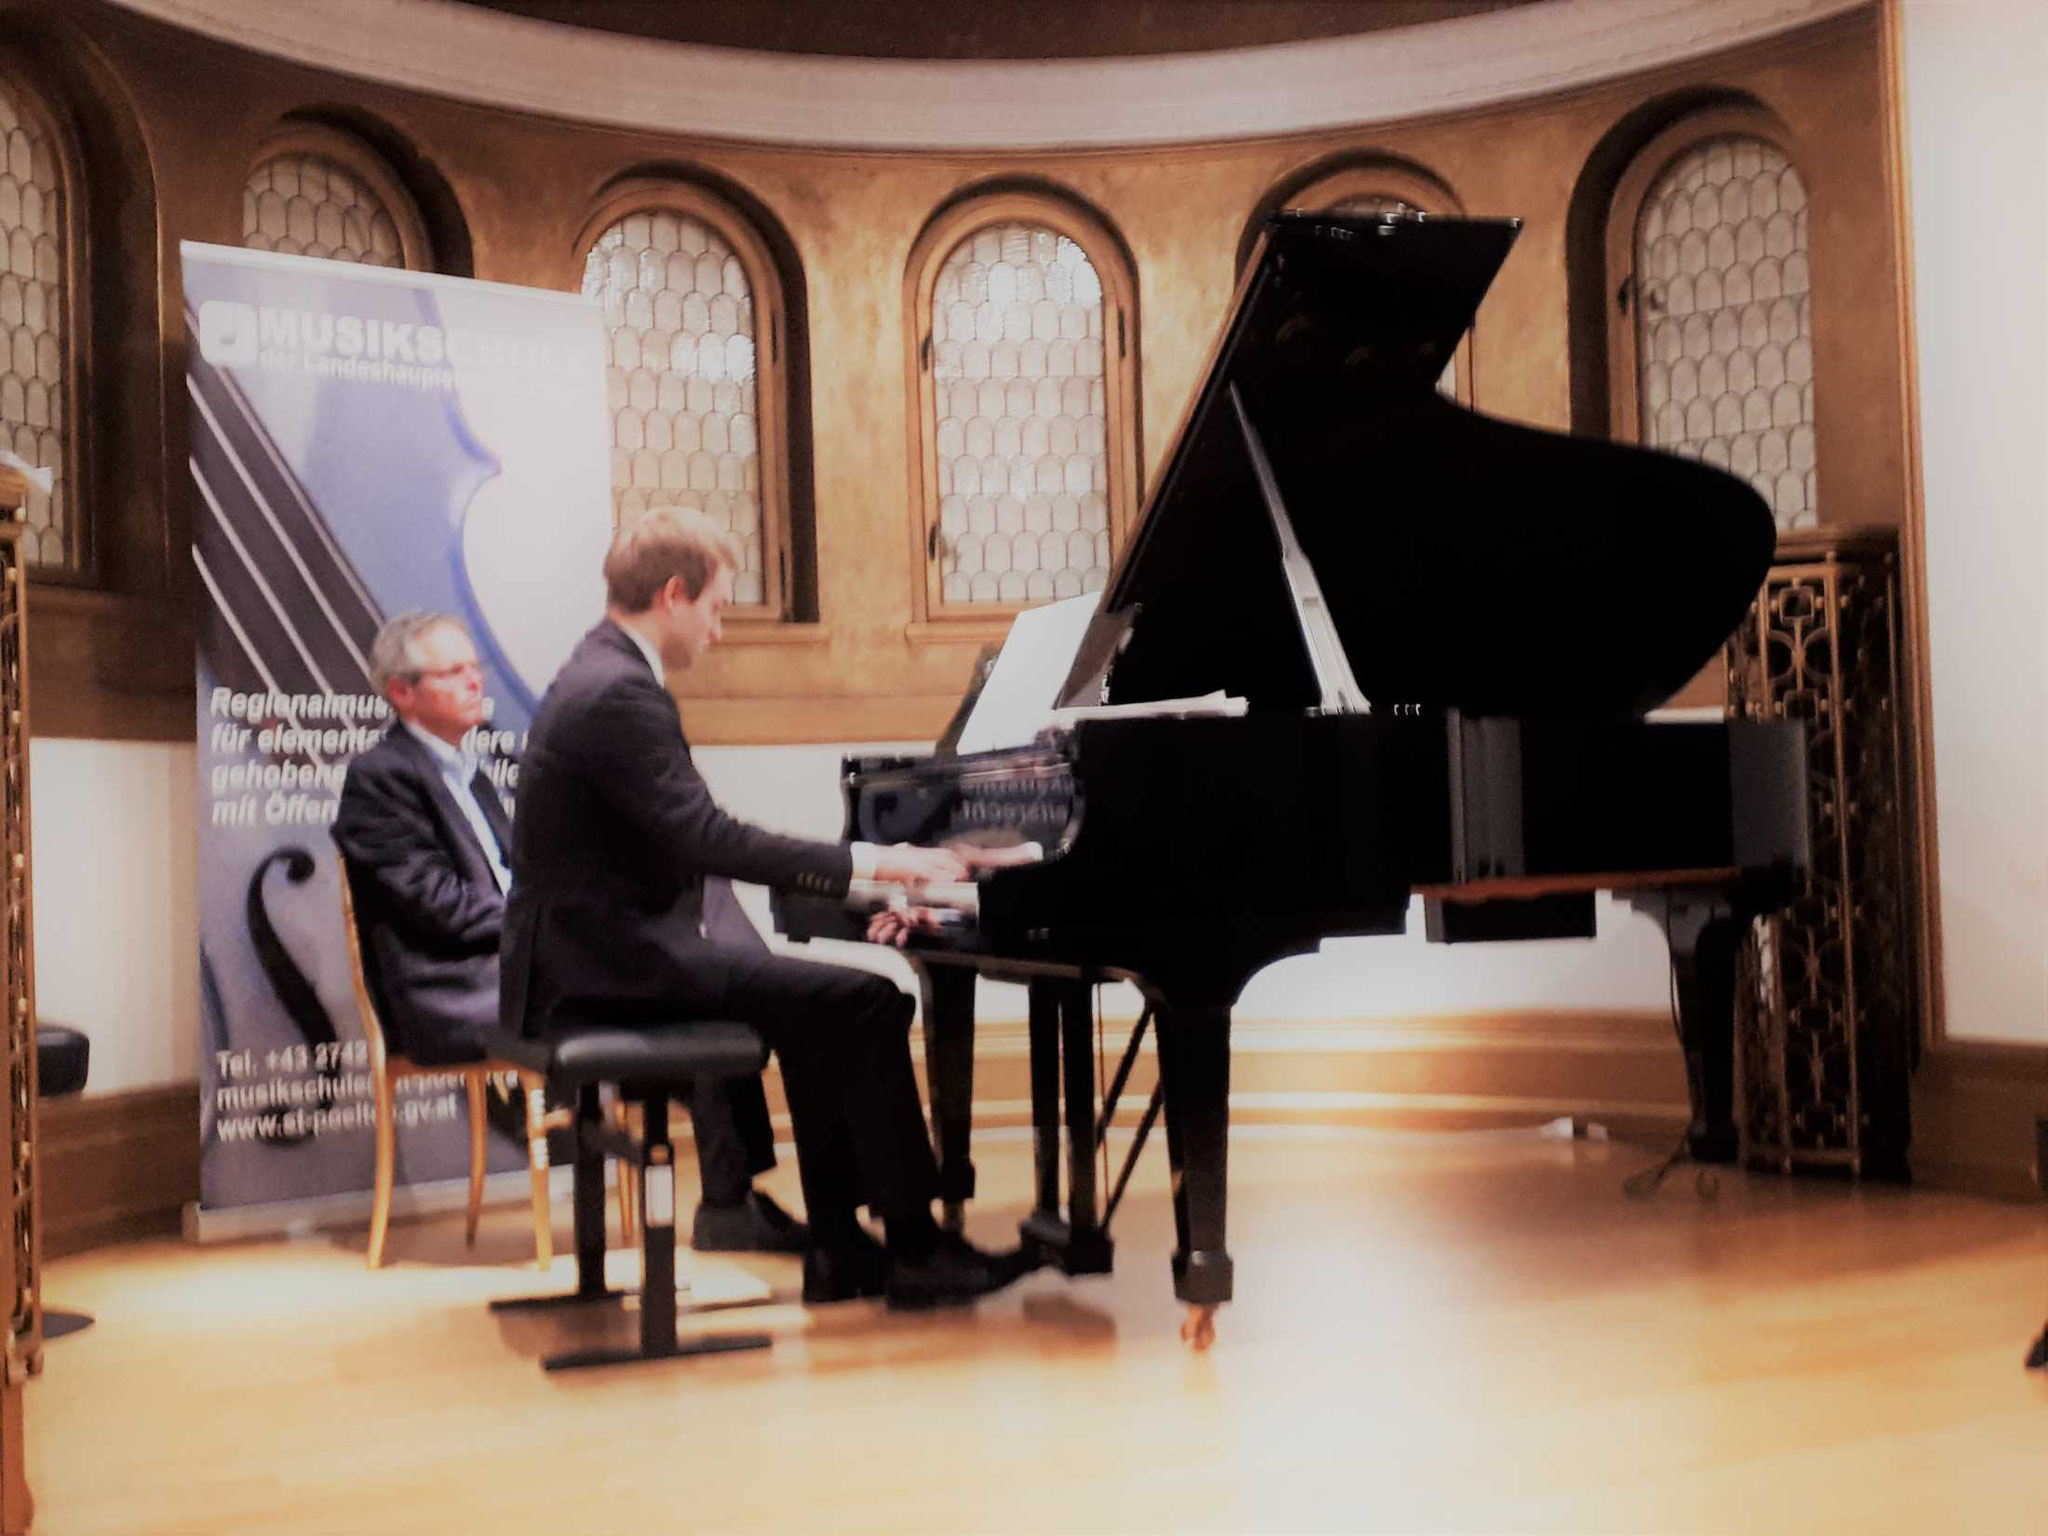 Christian AIGNER spielte "Impromptu in B-dur, DV, 935 Nr.3 v. F. Schubert